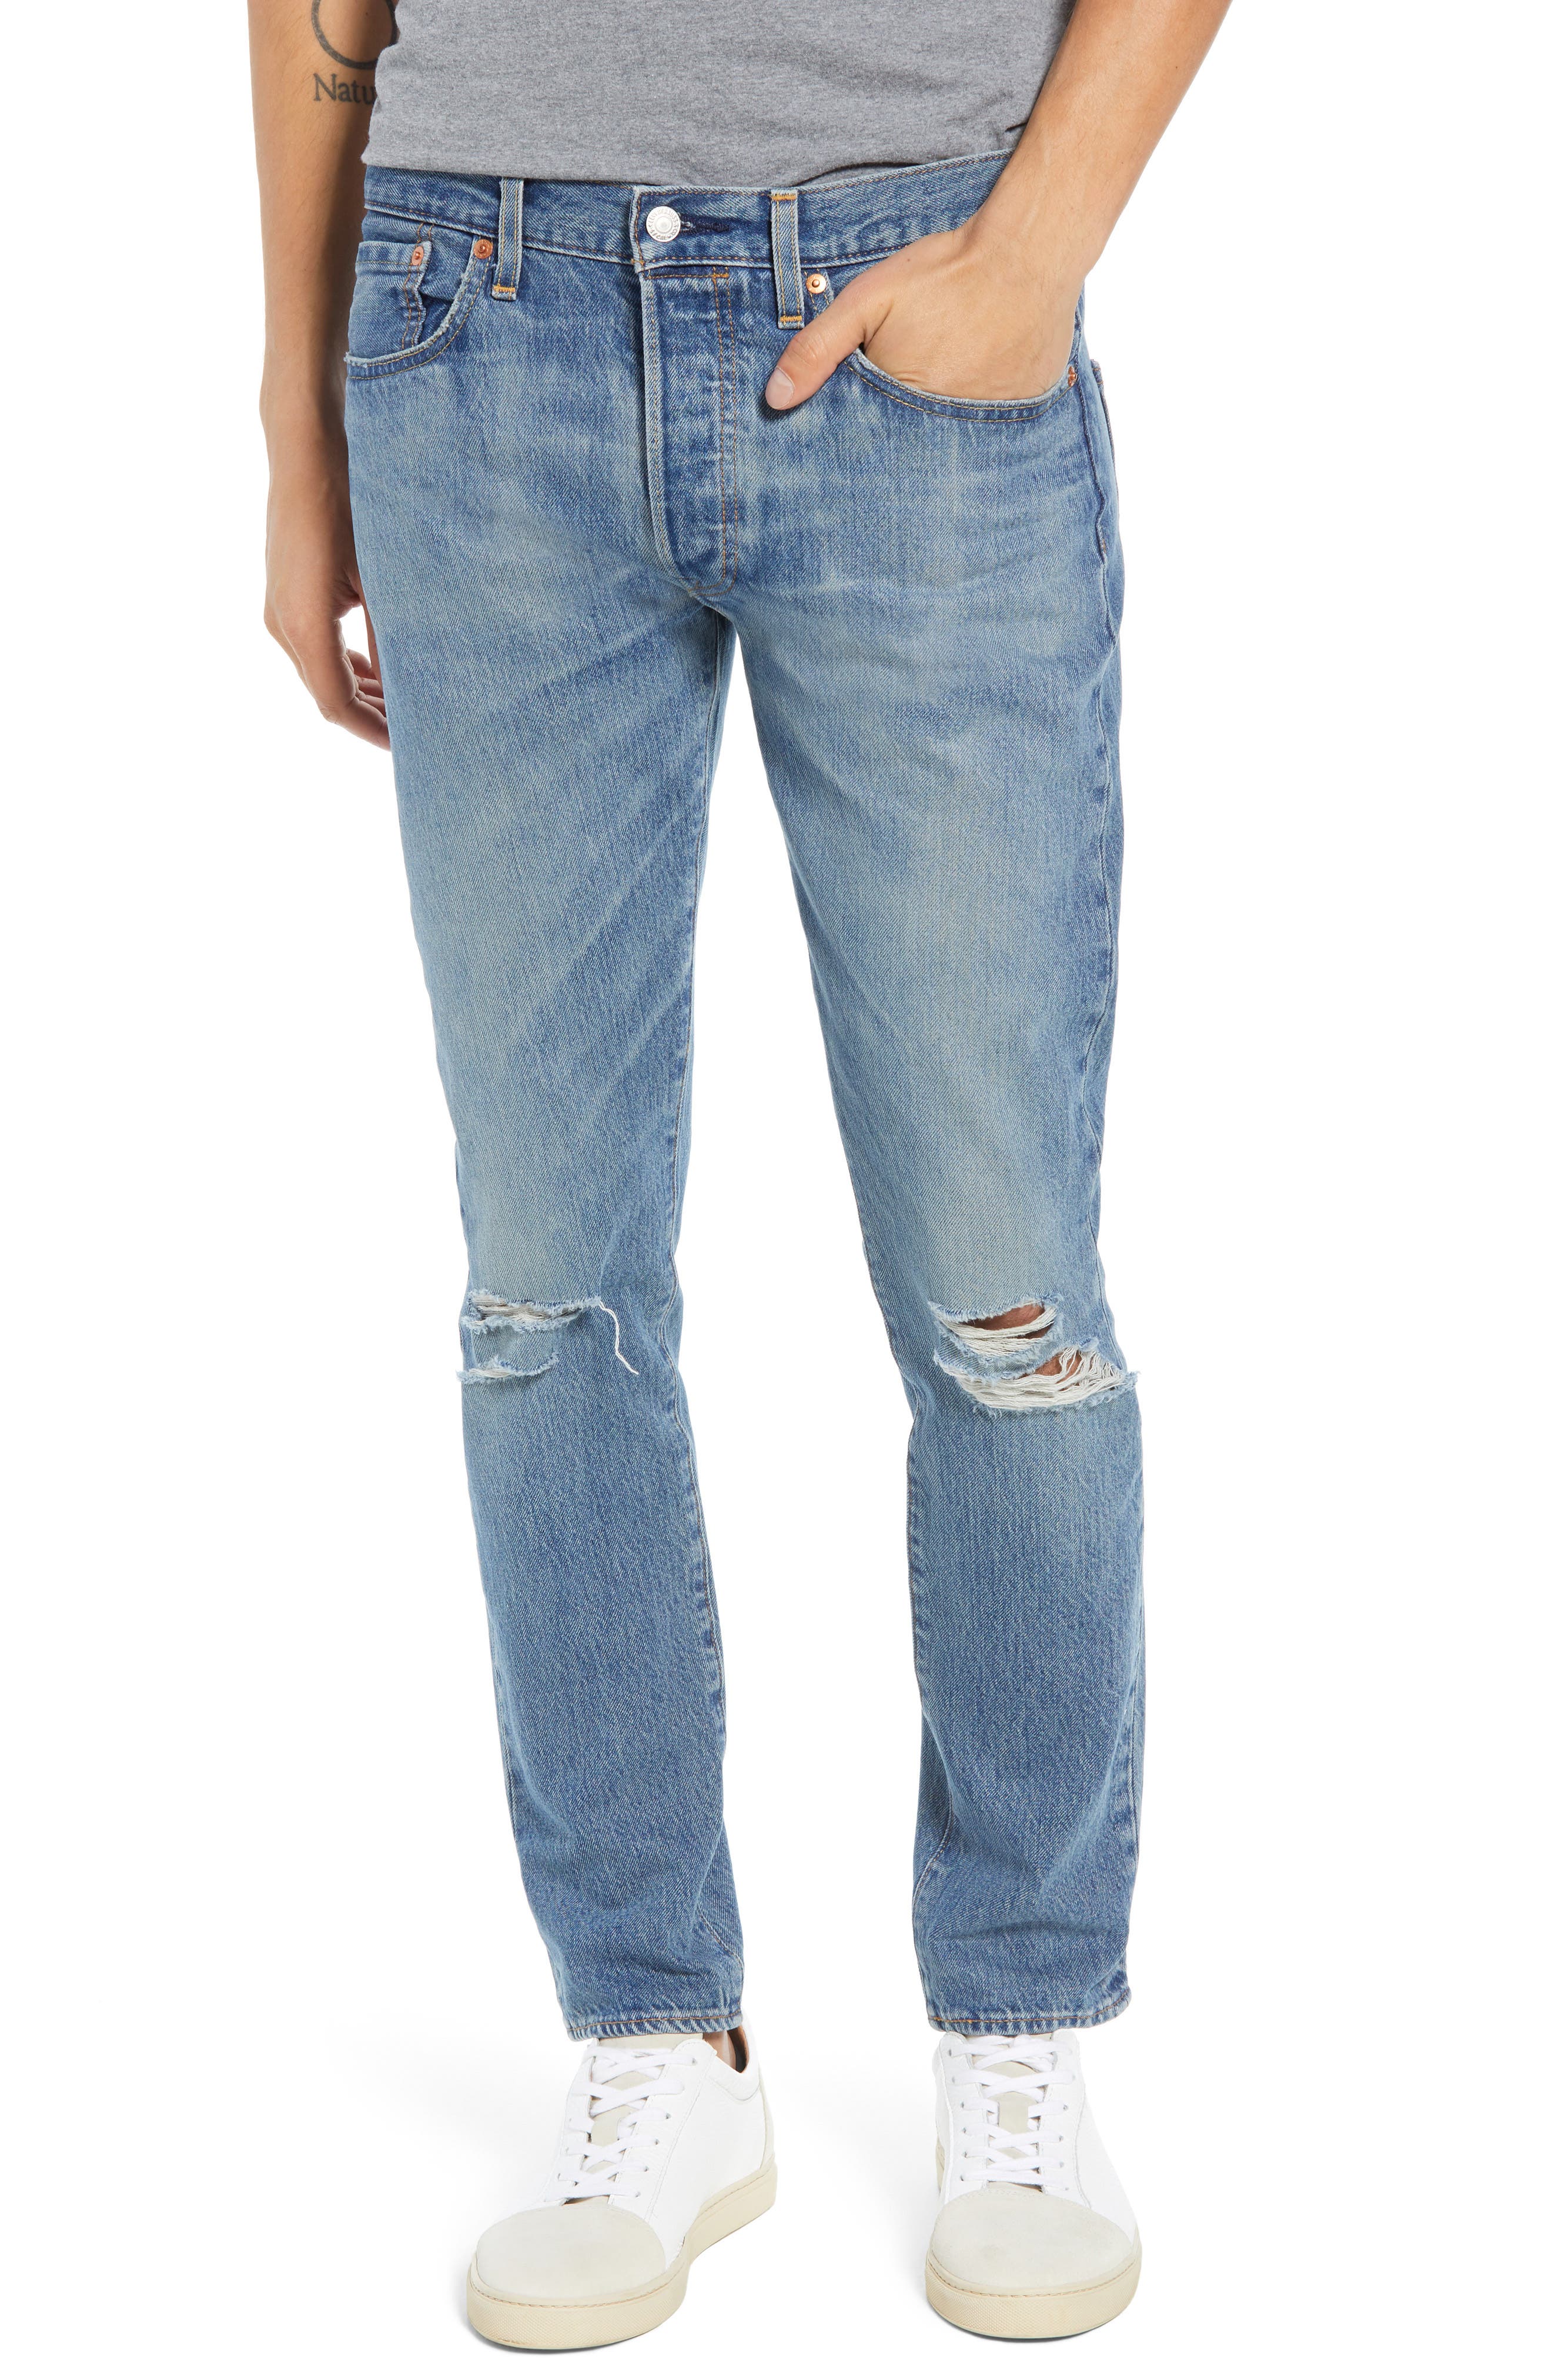 levis jeans 501 slim fit